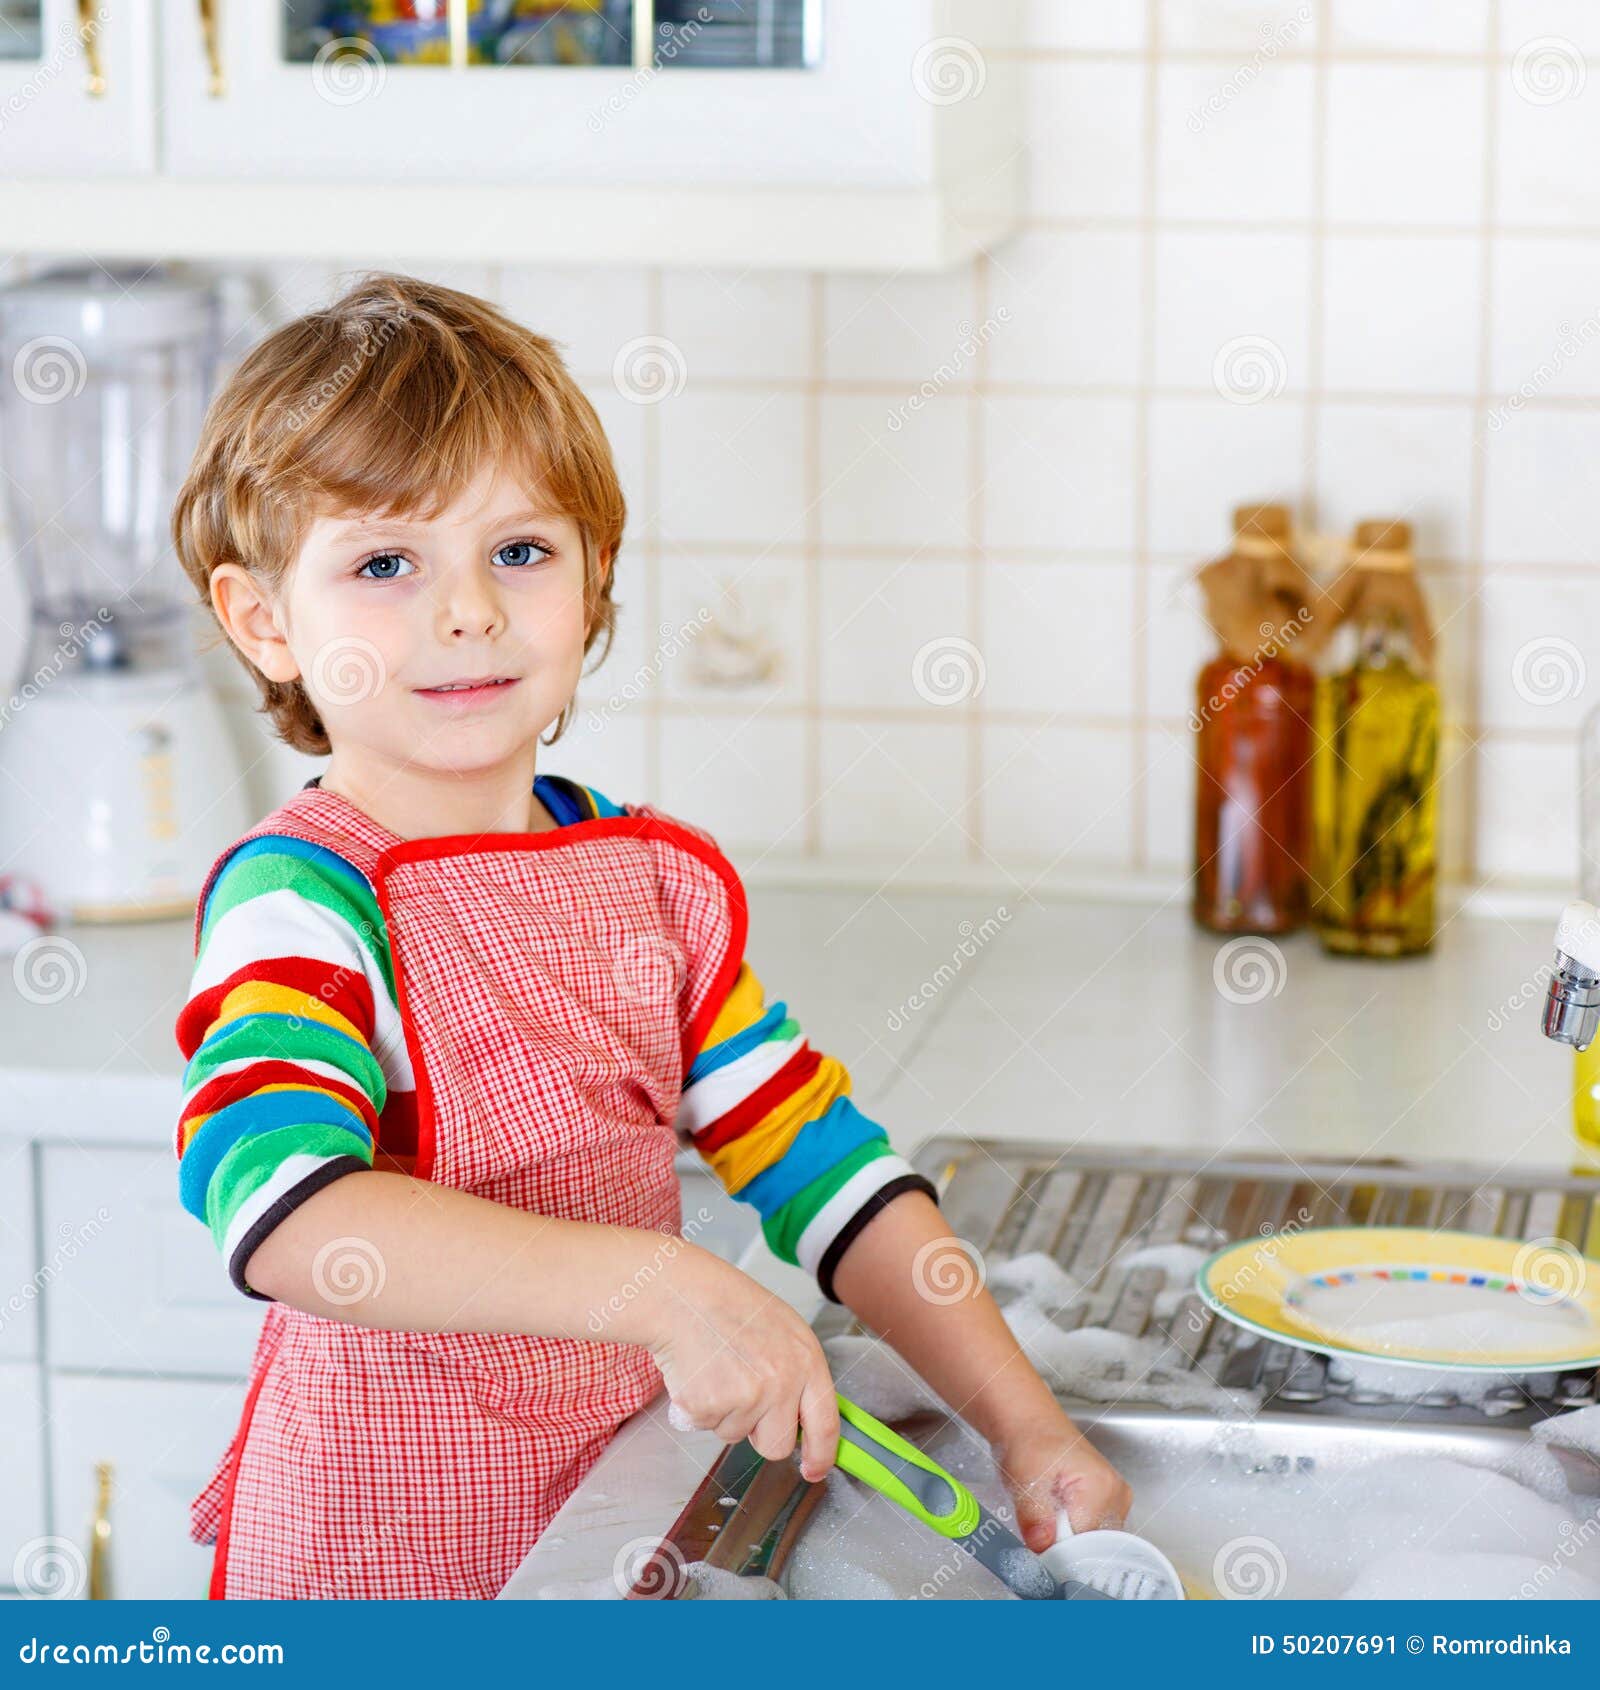 Мальчик моет посуду. Ребенок помогает по дому. Детская посуда мытье. Мальчик моет посуду иллюстрация. Ребенок помогает маме по дому.